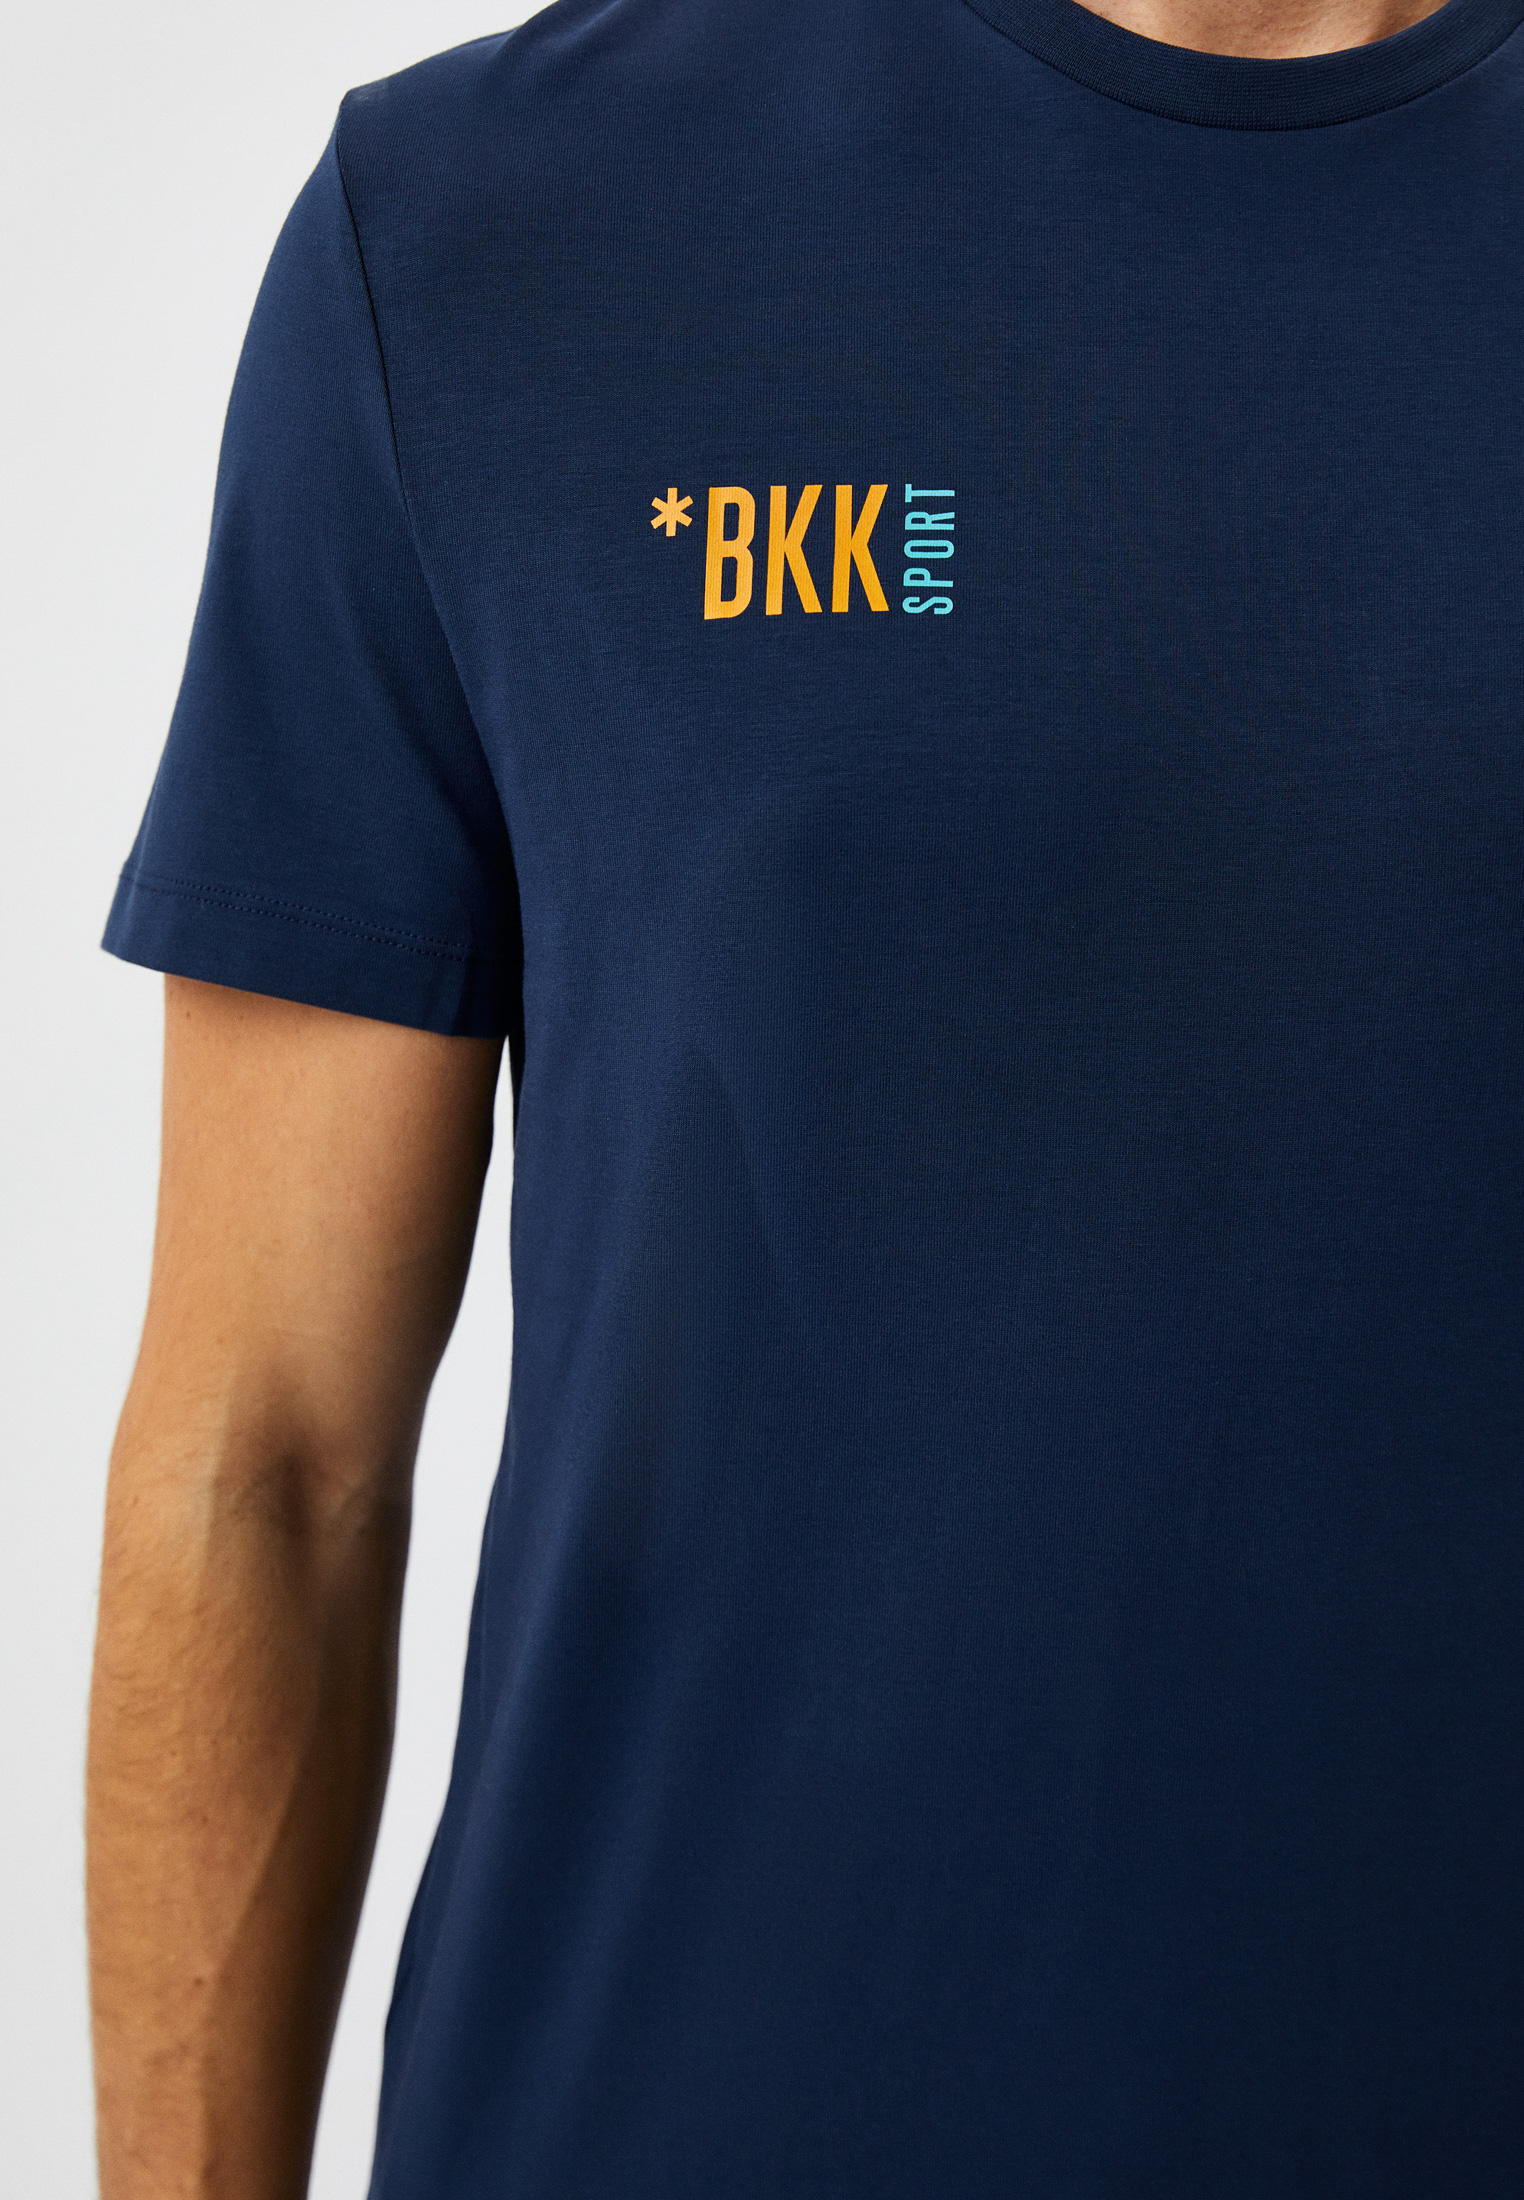 Мужская футболка Bikkembergs (Биккембергс) C 4 101 62 E 1811: изображение 4